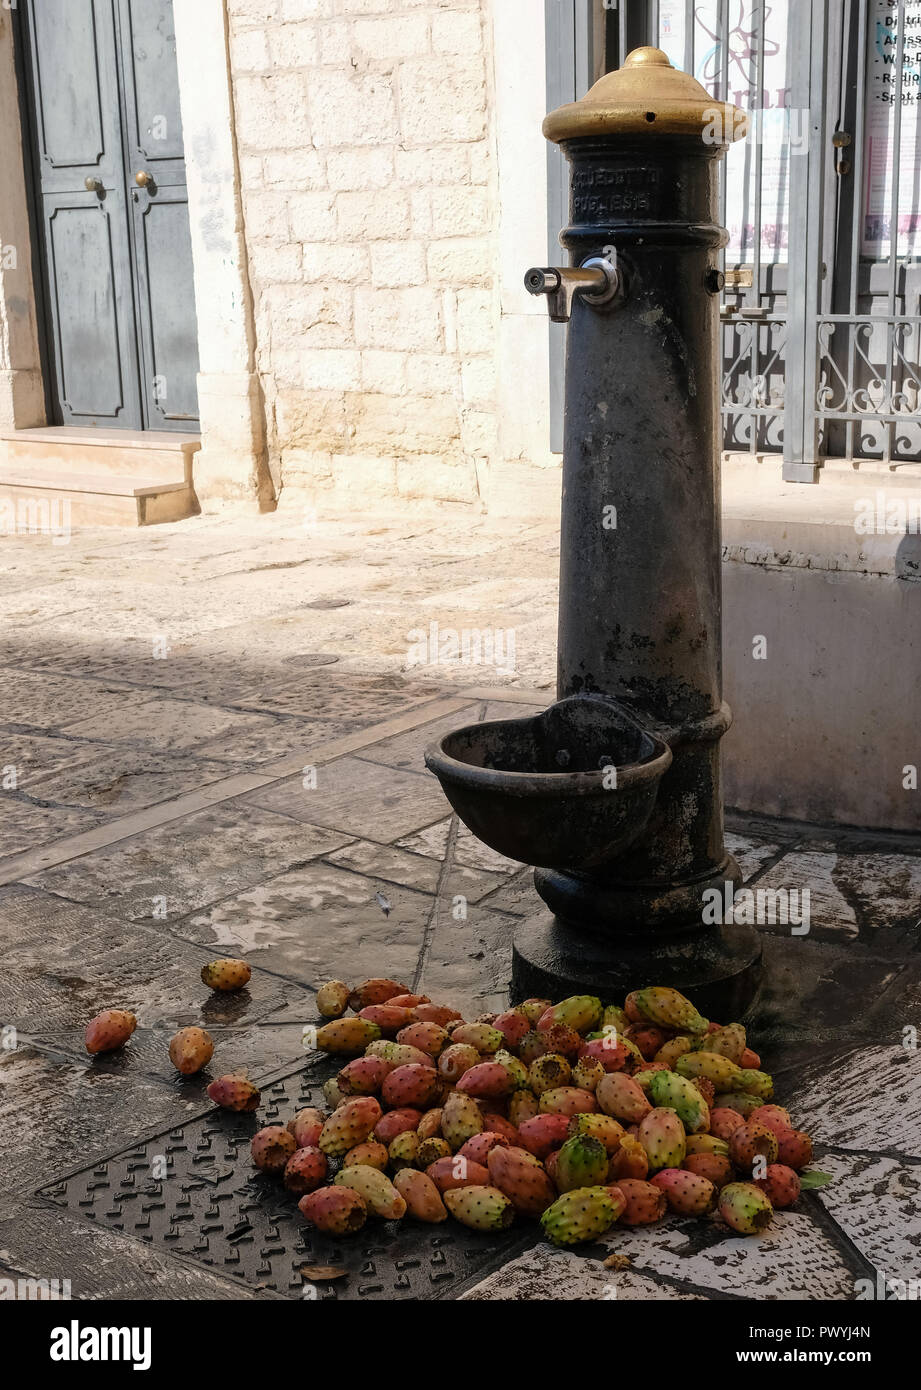 Feigenkakteen Obst auf einer Straße in Trani, Apulien, Italien. Sie haben gerade durch eine Straße Verkäufer gewaschen worden. Stockfoto